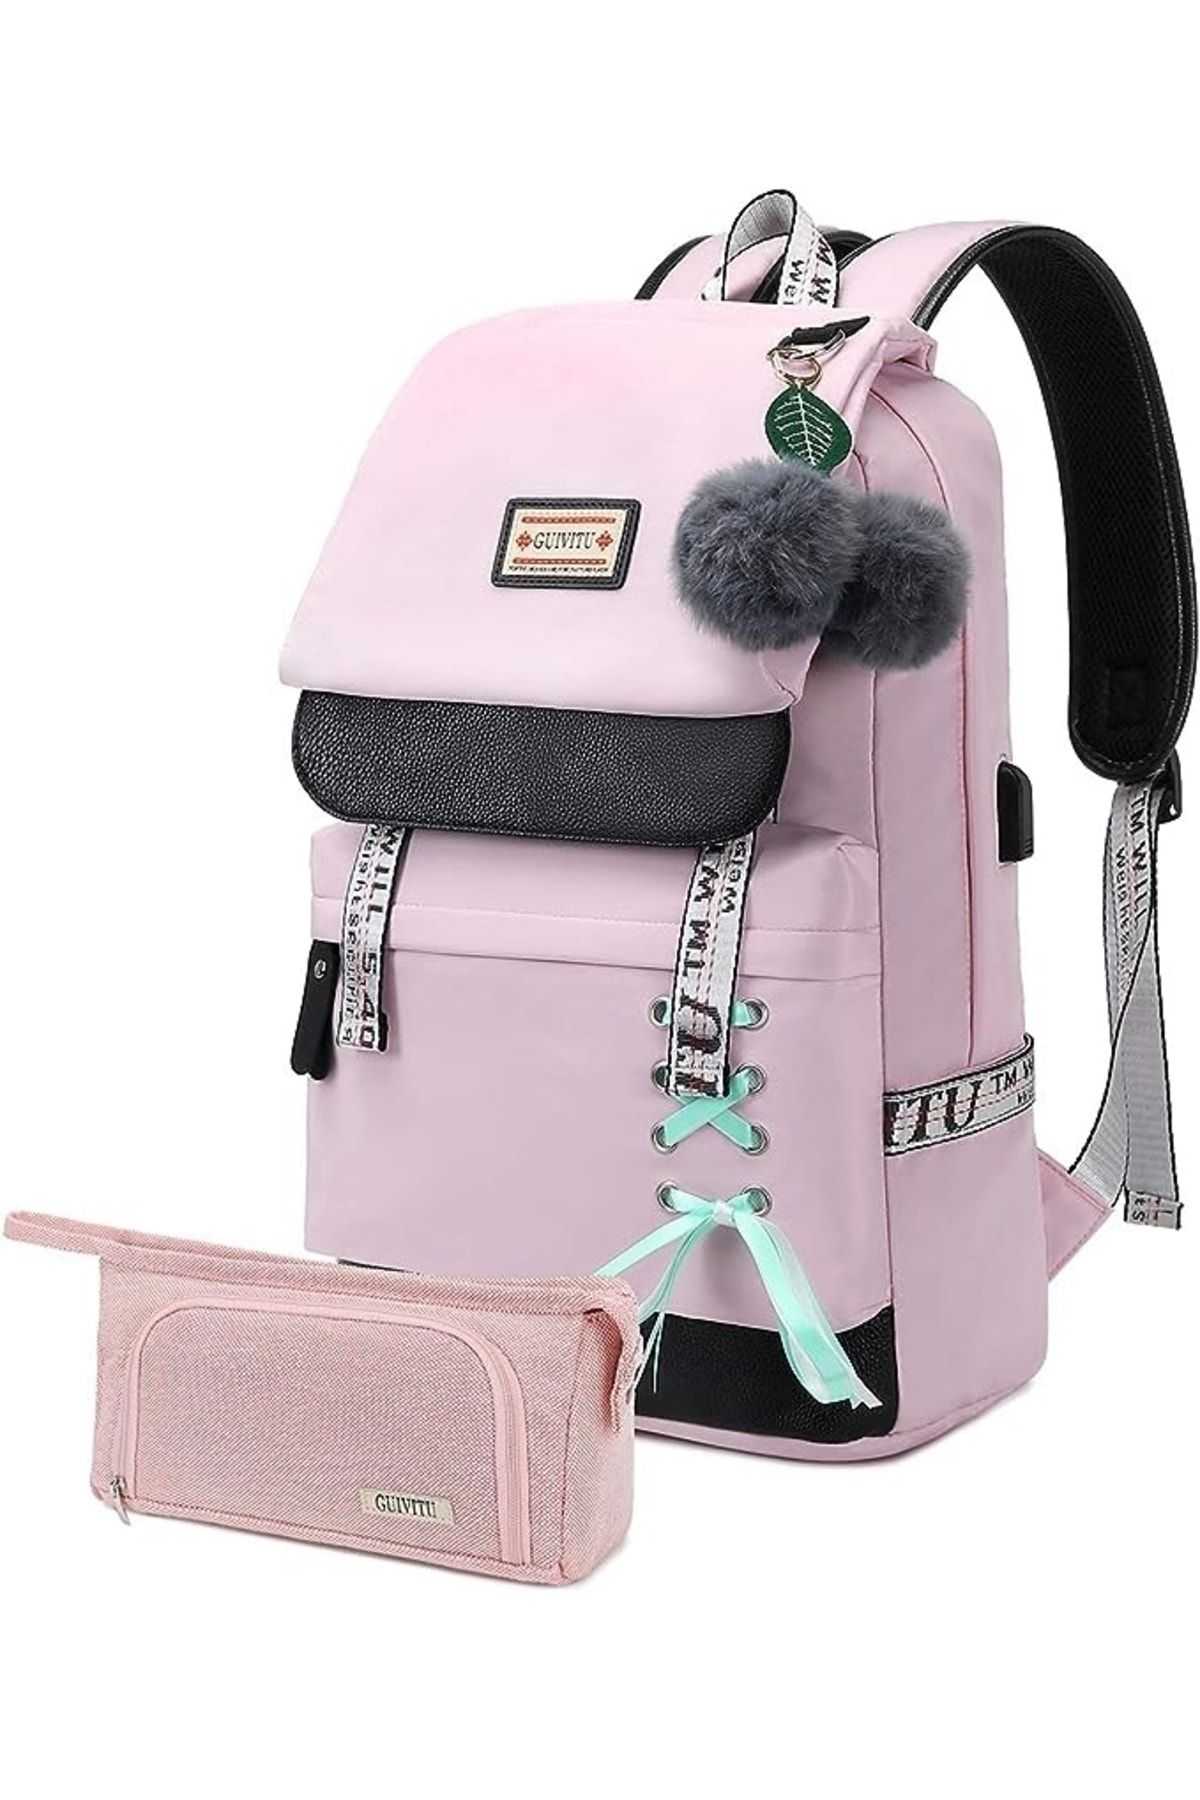 SWİCCO Okul sırt çantası, kız, genç, okul sırt çantası, ilkokul, çocuk okul çantası, günlük sırt çantası